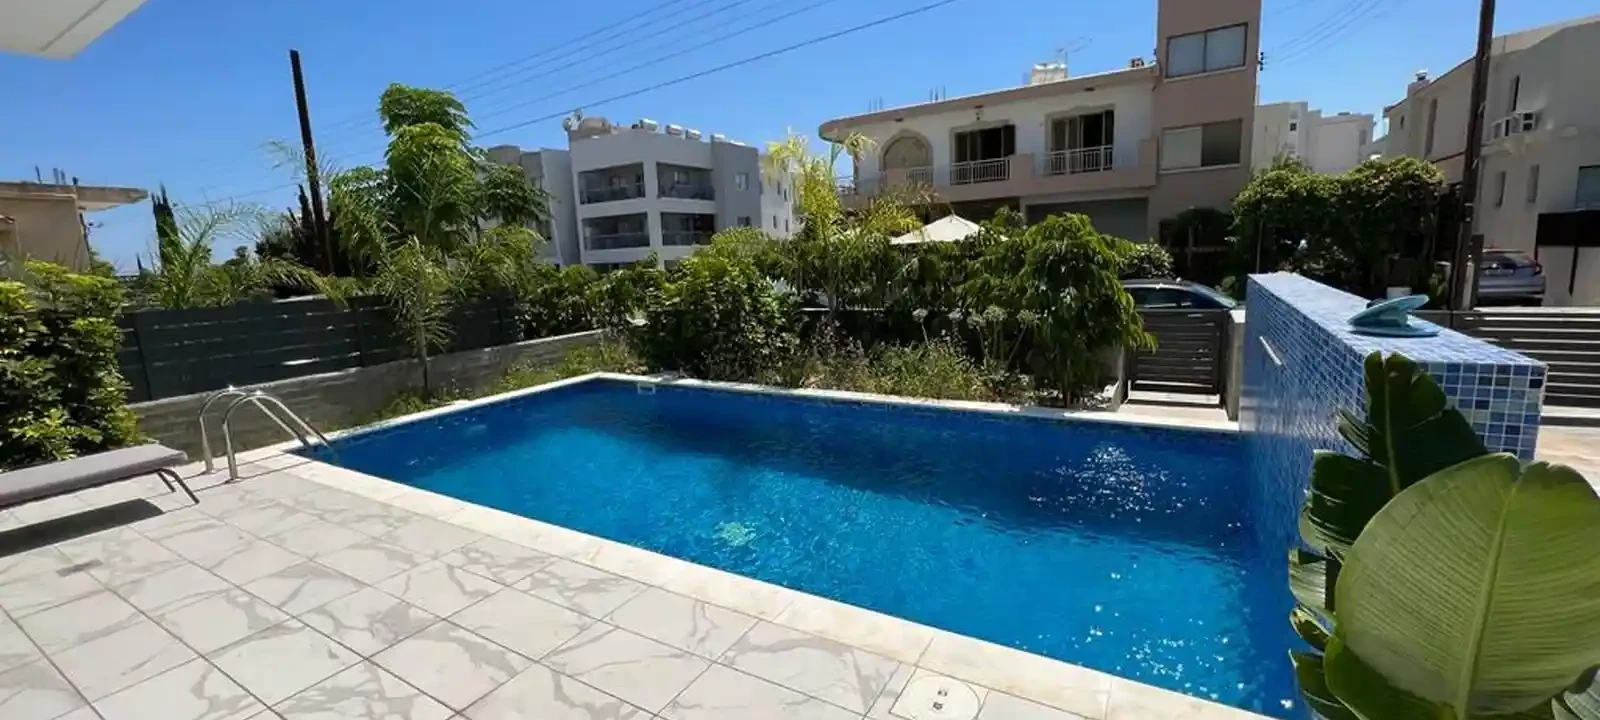 3-bedroom villa to rent €2.800, image 1